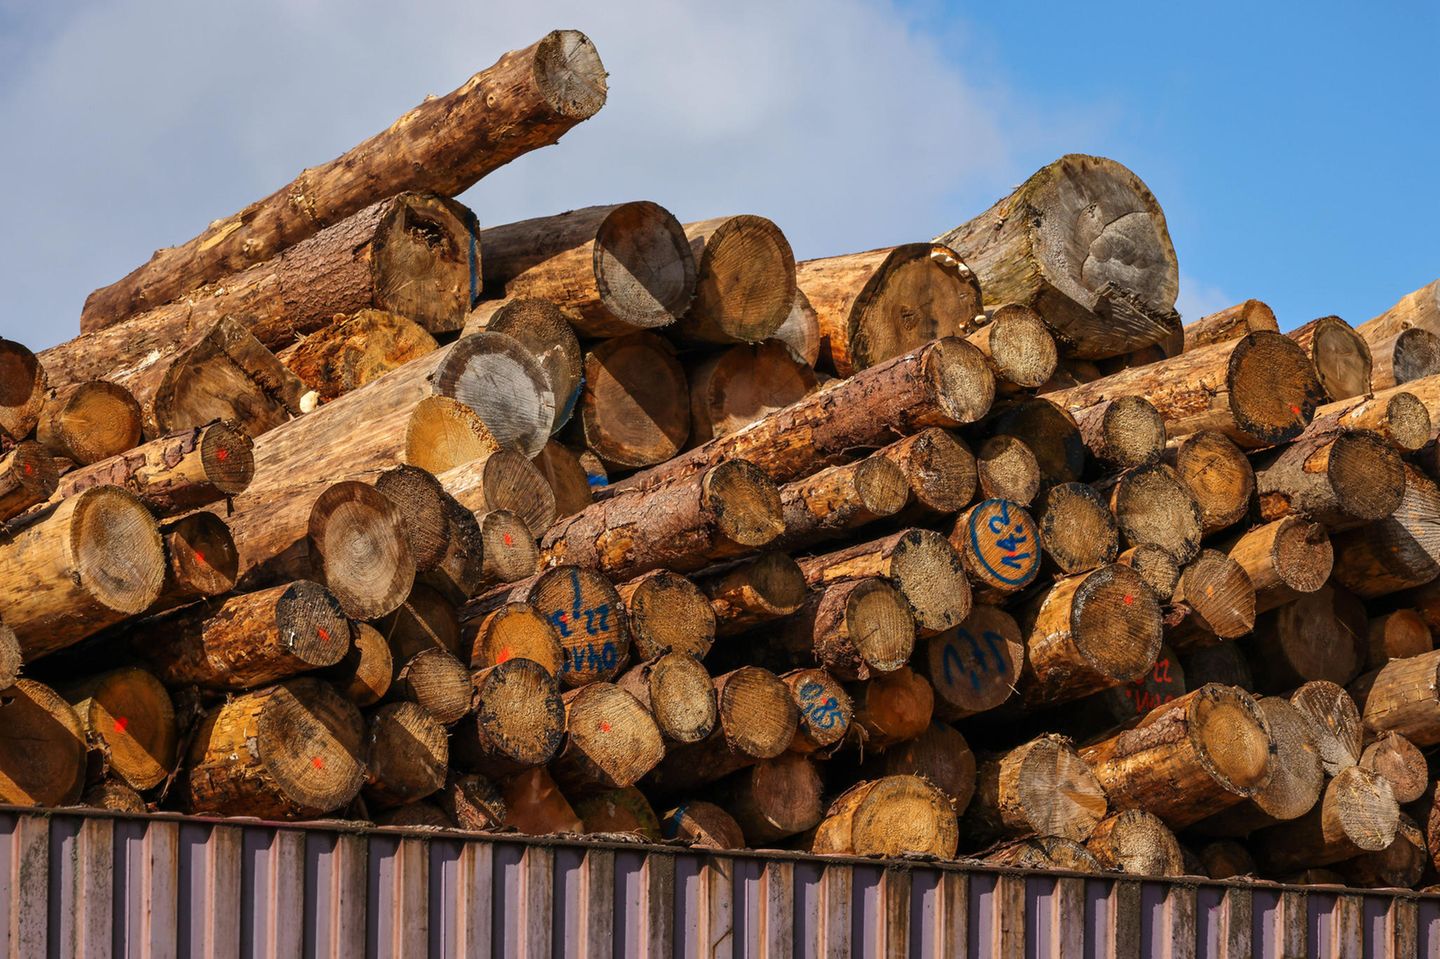 Holzstämme für den Export lagern im Duisburger Containerhafen. Ihre Behandlung mit dem Pestizid Sulfuryldiflourid kritisieren Umweltverbände als extrem klimaschädlich